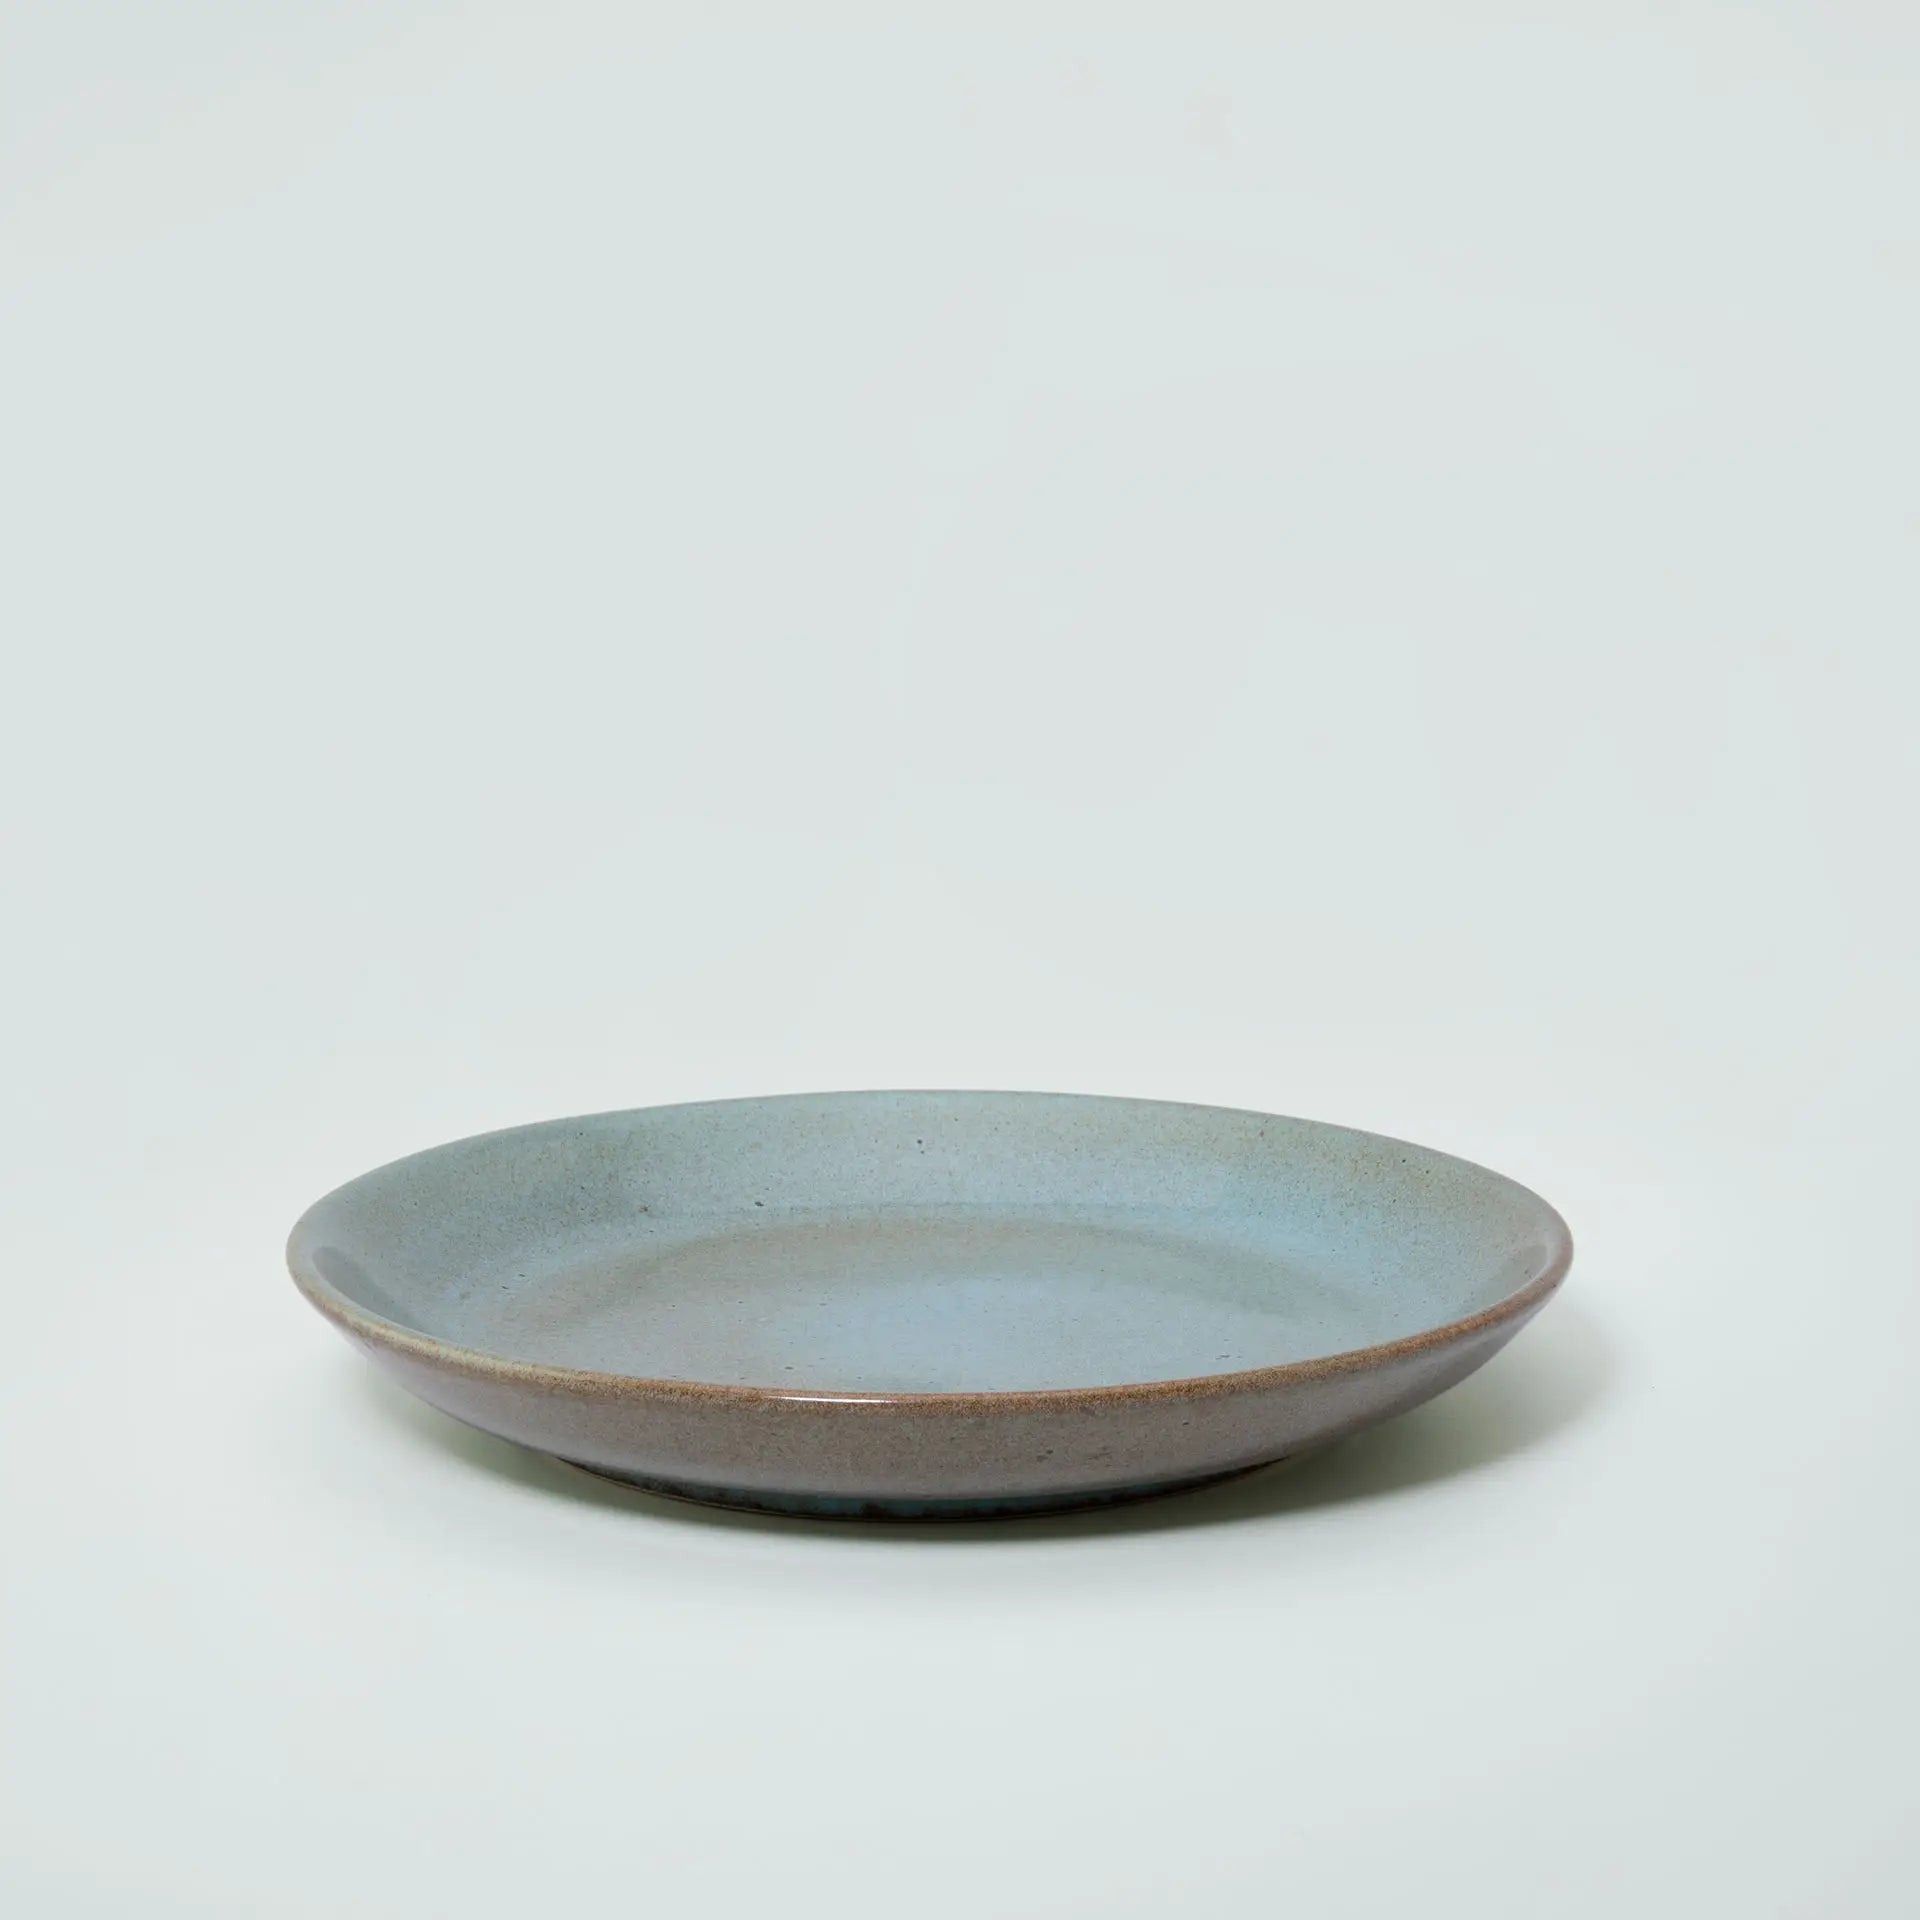 aqua rustic ceramic dessert plate